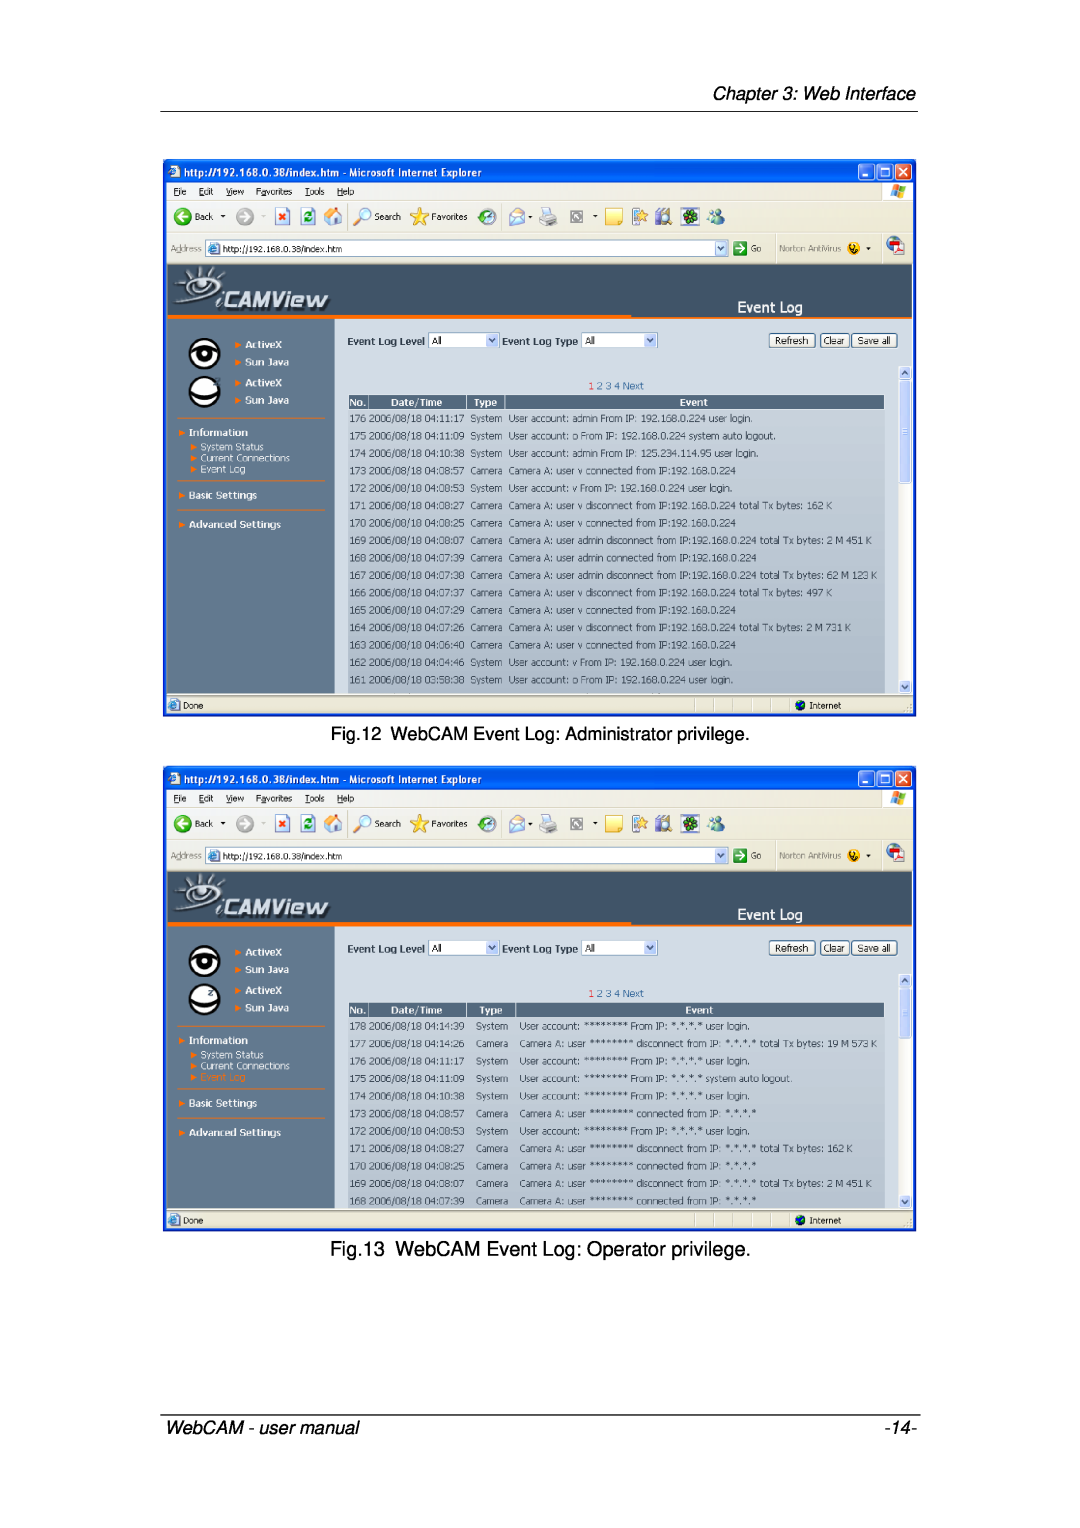 3Com iCV-03a, iCV-01a, iCV-08 WebCAM Event Log Operator privilege, Web Interface, WebCAM Event Log Administrator privilege 